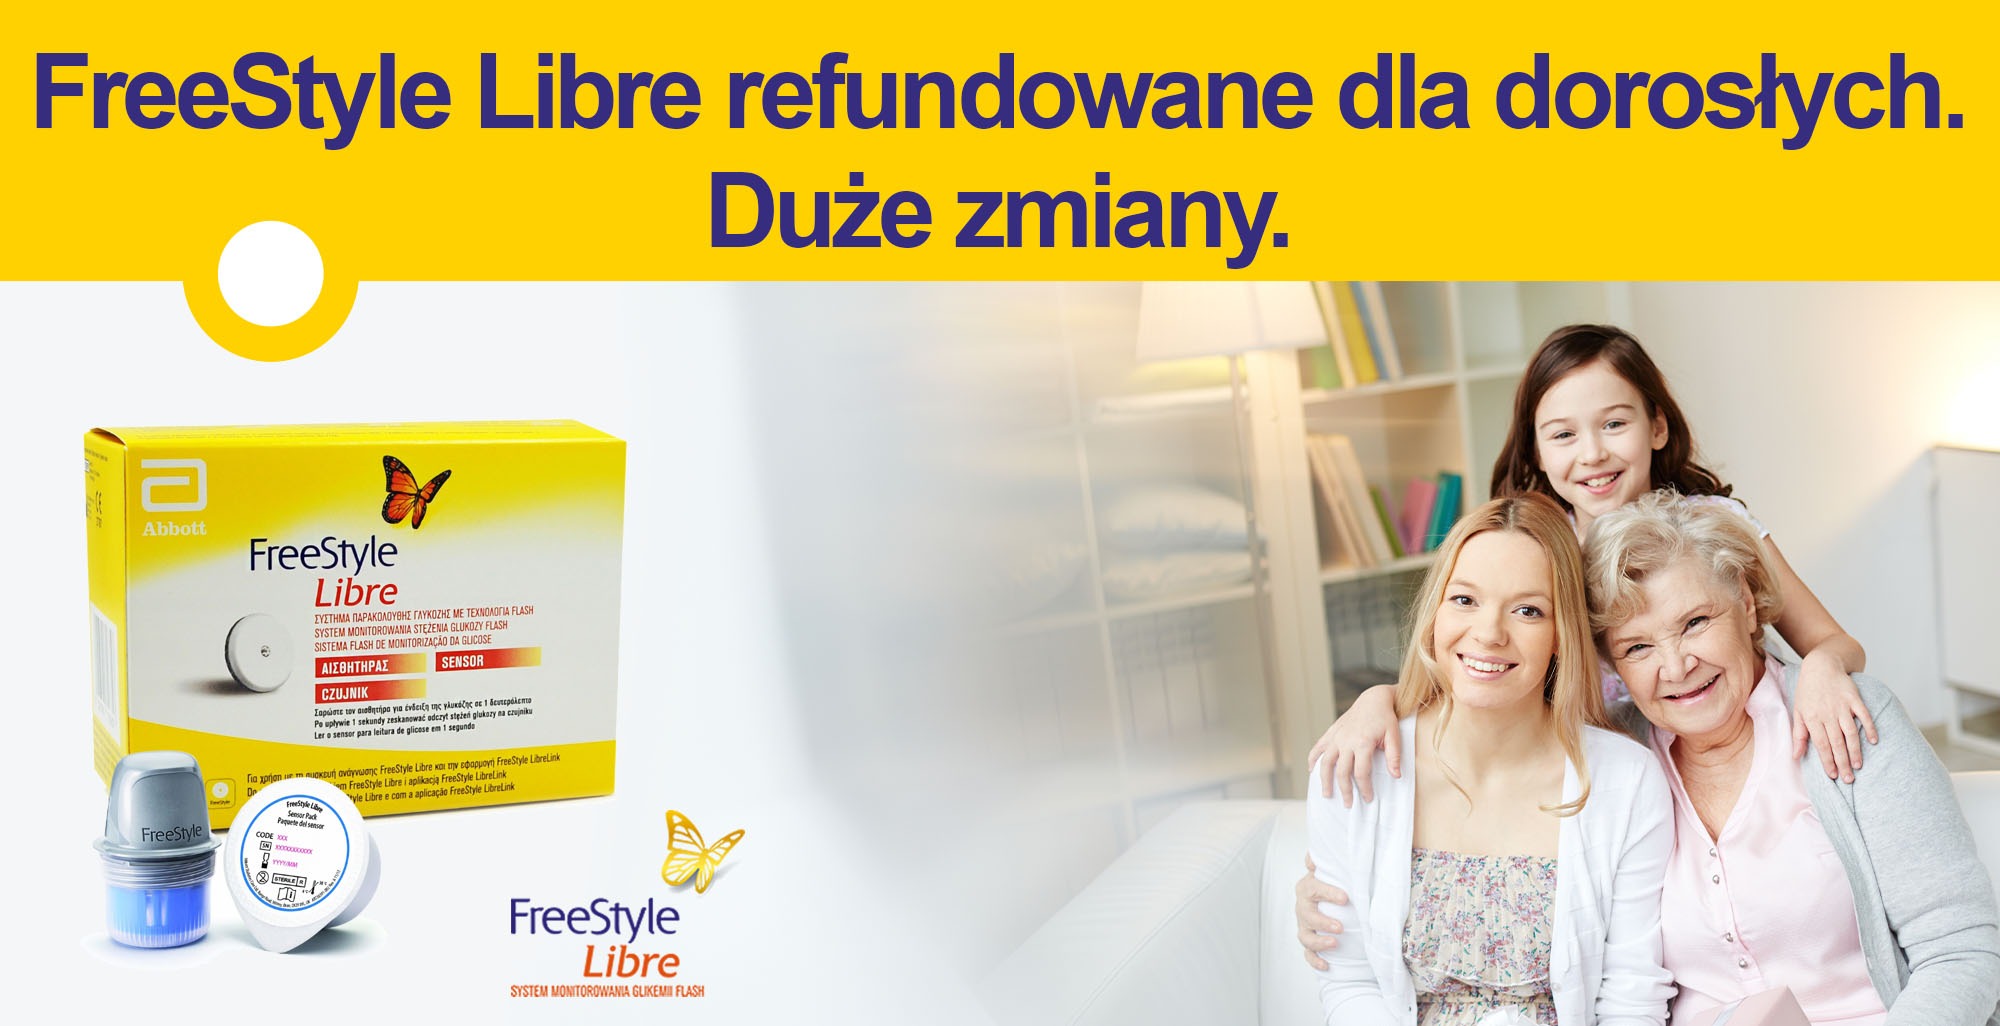 FreeStyle Libre refundowane dla dorosłych. Duże zmiany.